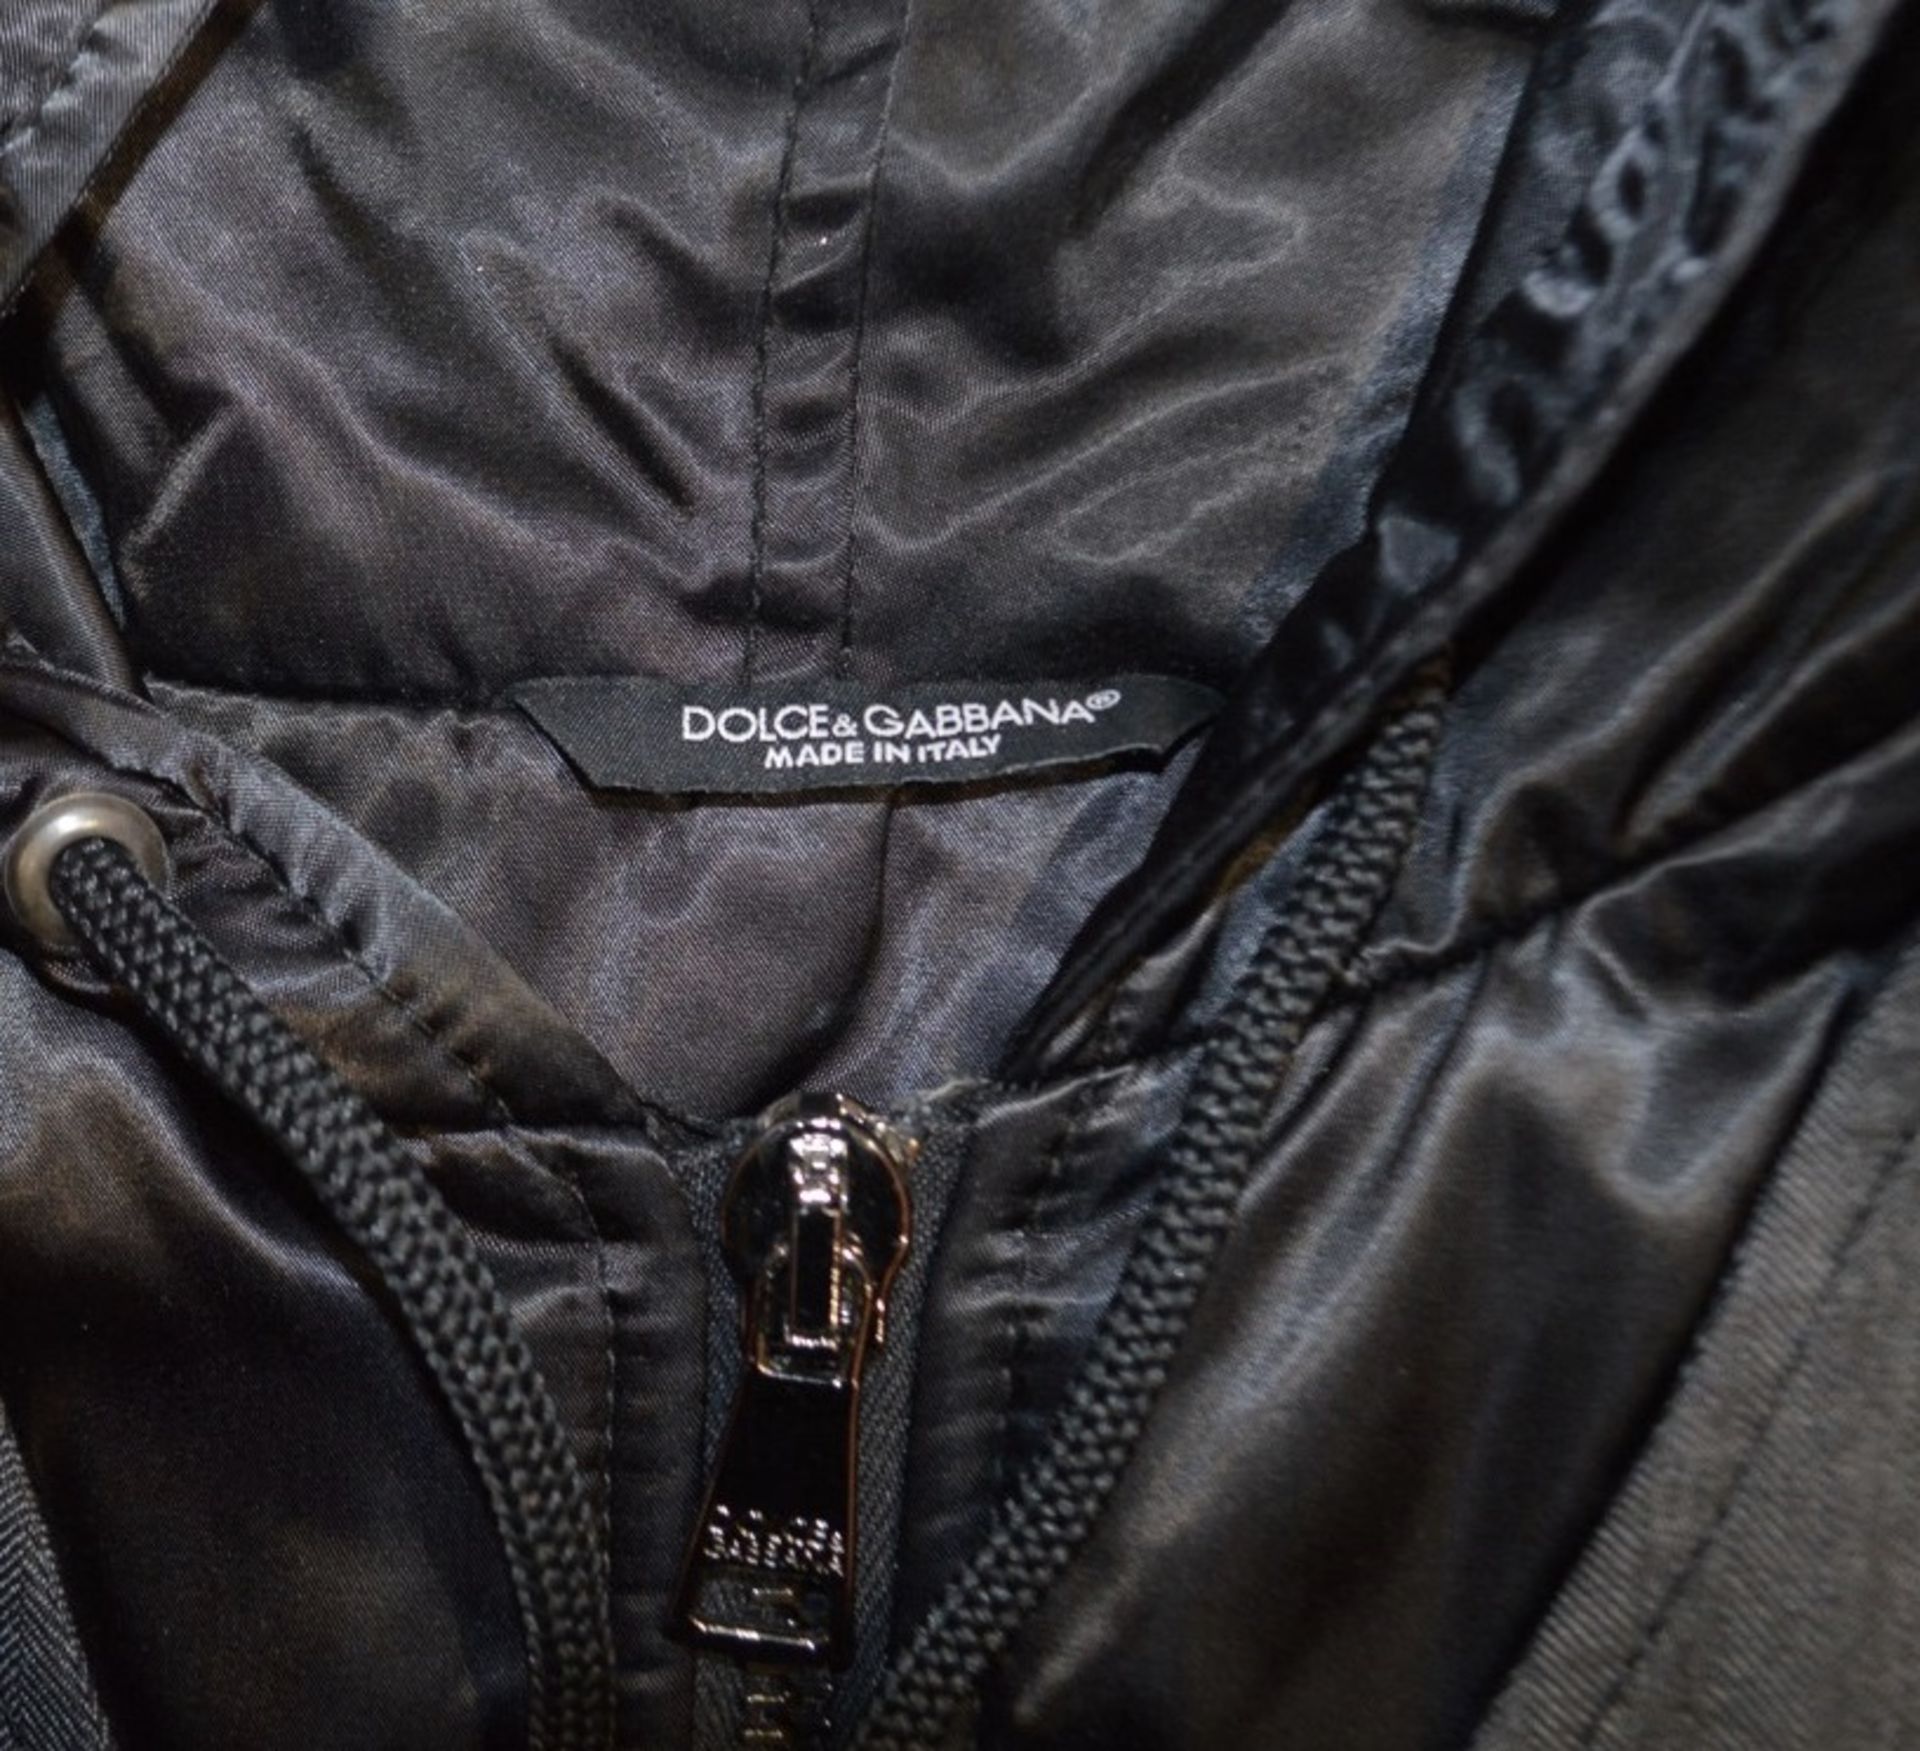 1 x Men's Genuine Dolce & Gabbana Hooded Gilet In Black & Grey - Size: 50 - Image 4 of 9